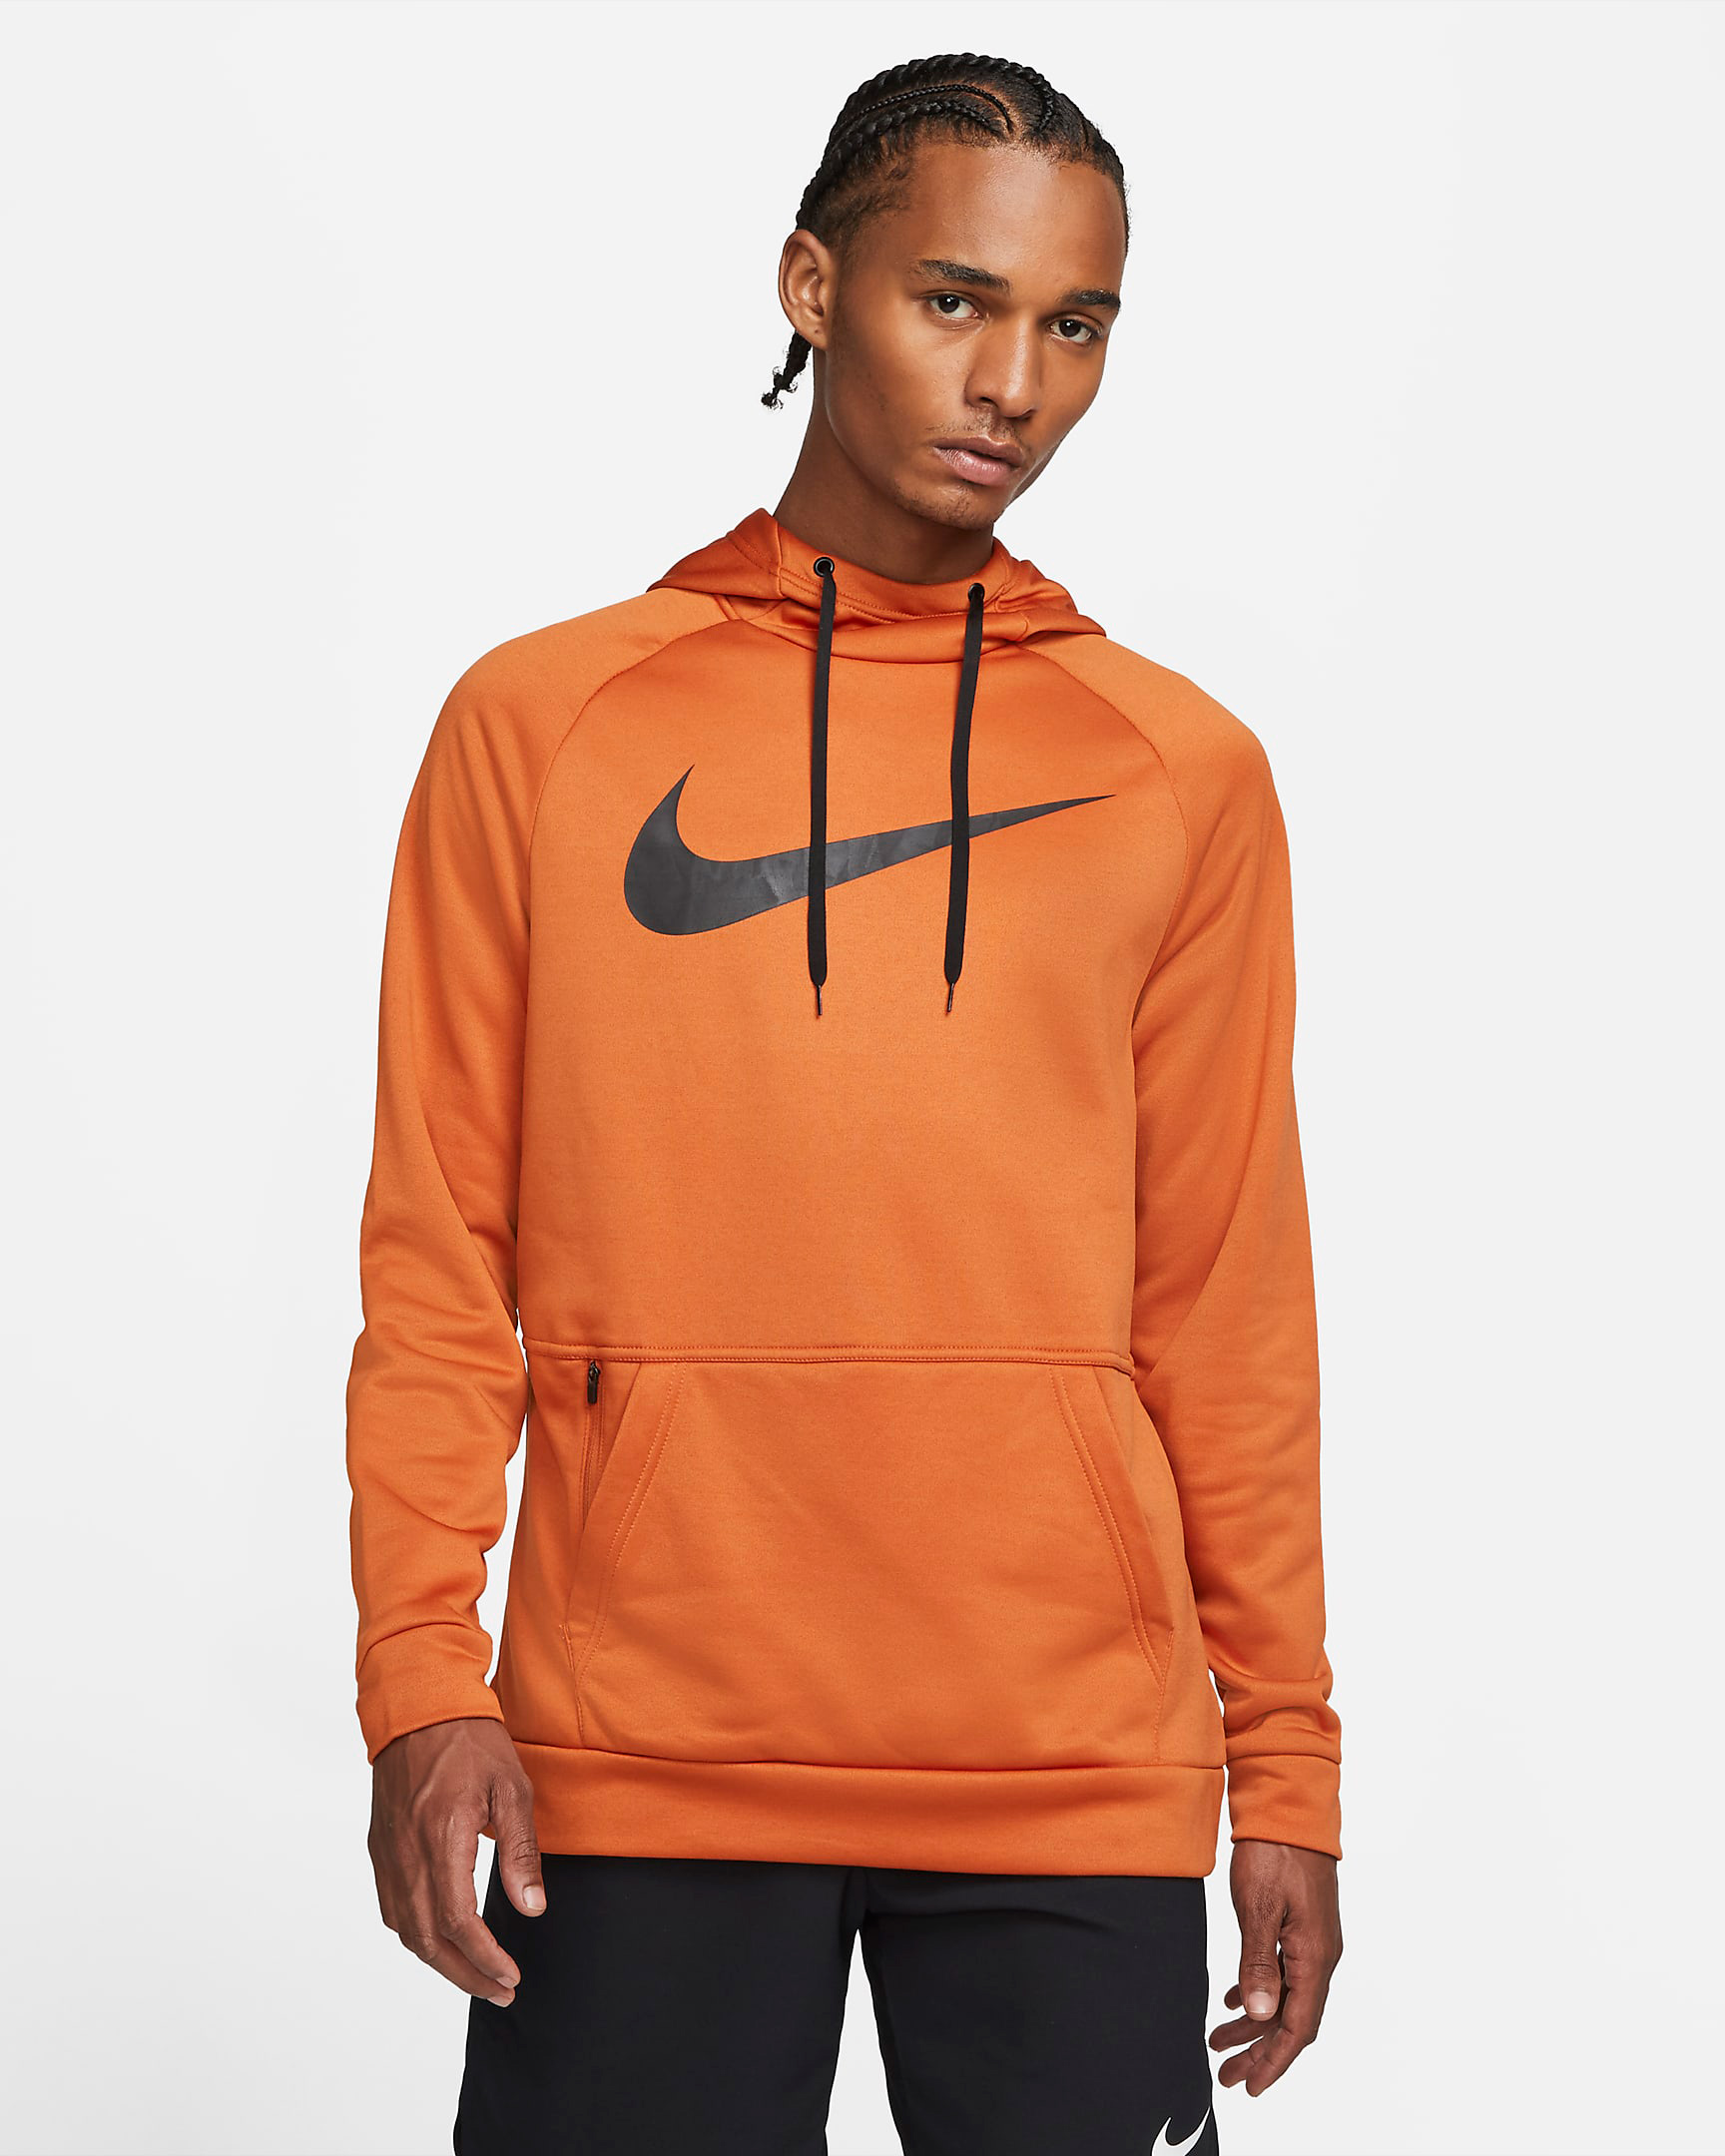 nike-sport-spice-orange-hoodie